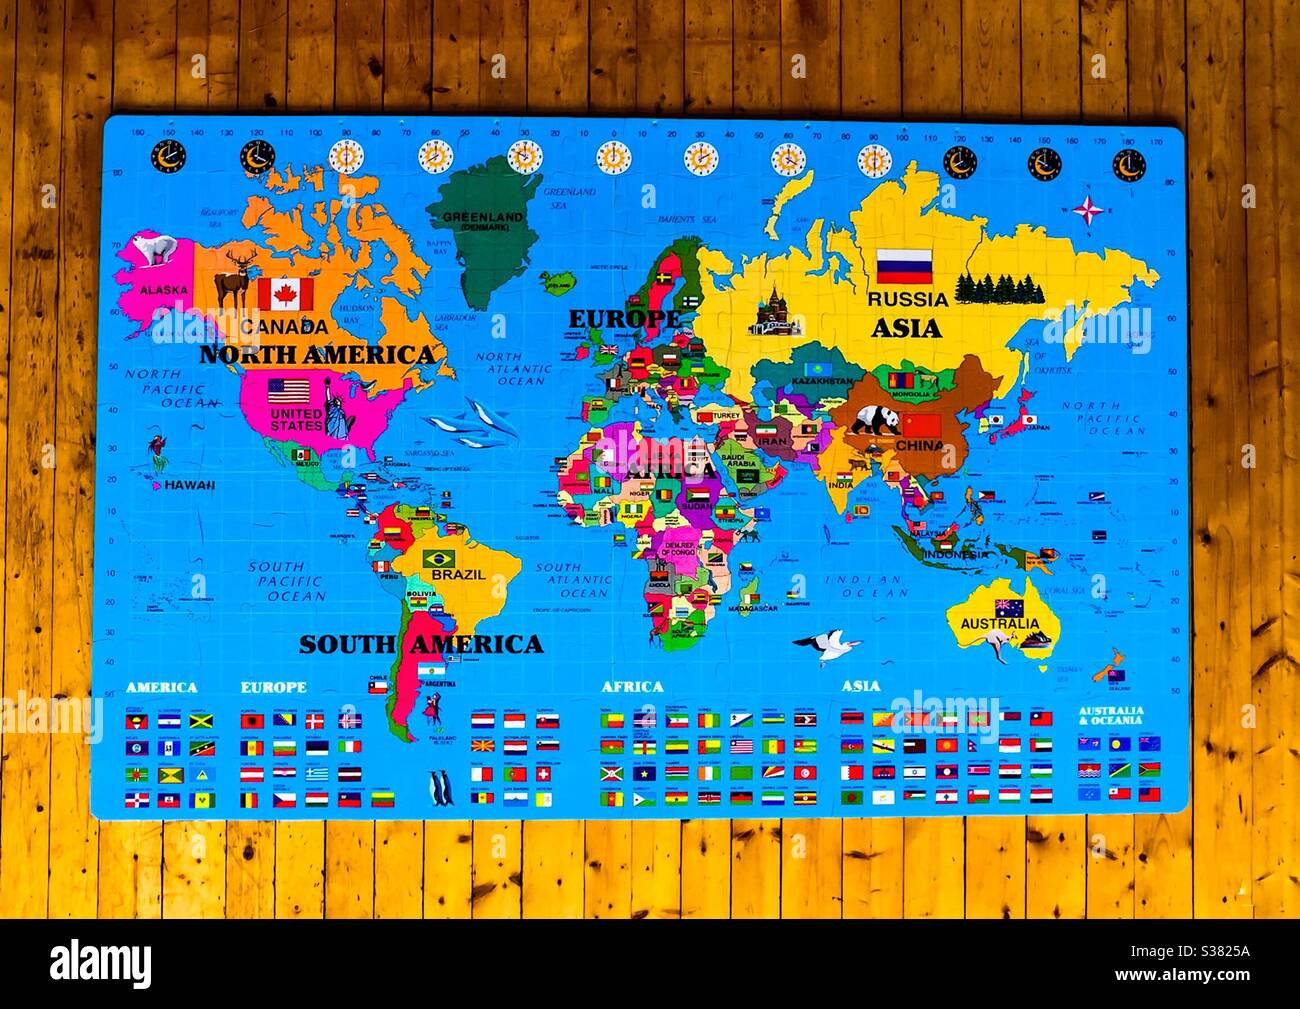 Un puzzle mappa del mondo molto grande, con bandiere, animali, e paesi a colori, allestito su un pavimento di legno di pino. 3D. Molto informativo. Simboli geografici, punti di riferimento, icone e altro ancora. Grandi pezzi. Giochi per bambini Foto Stock